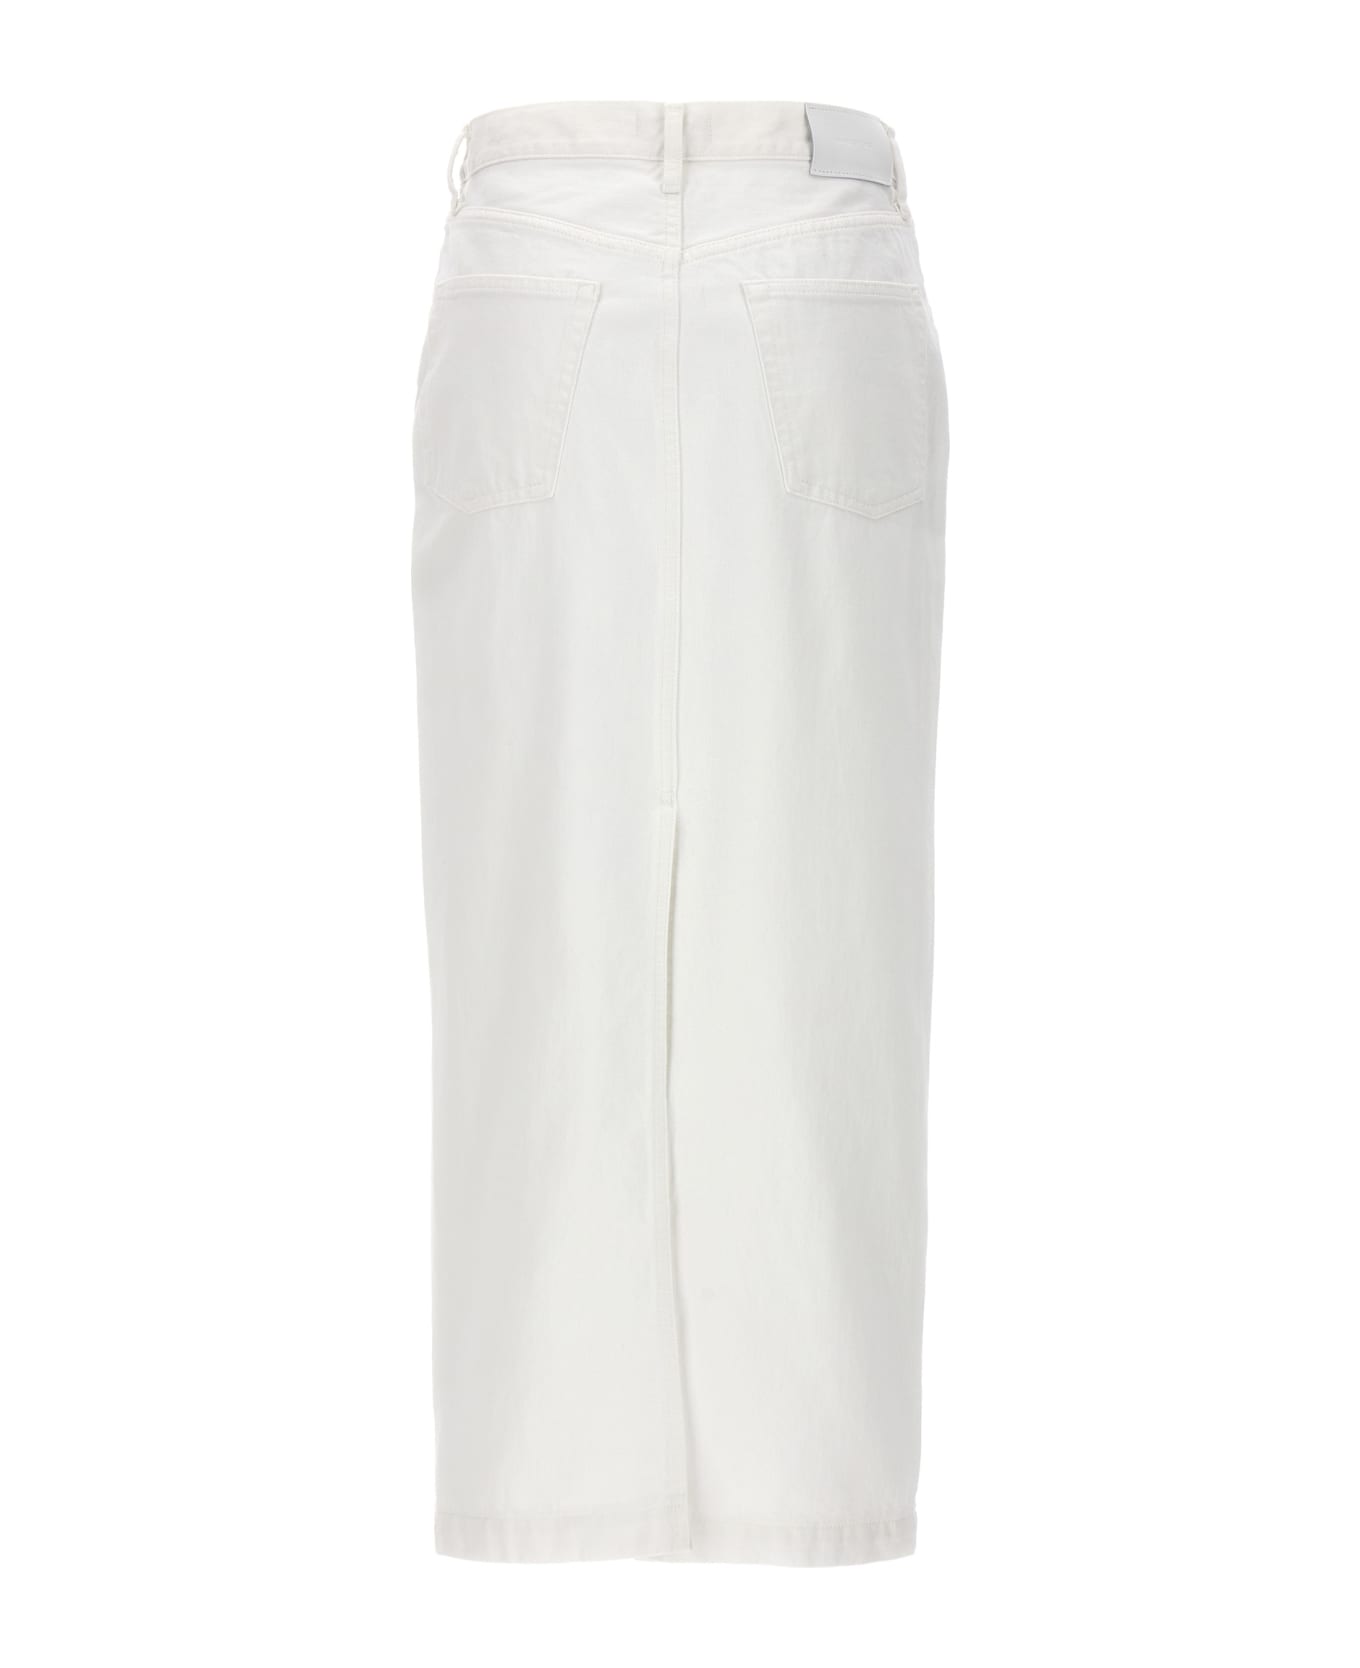 WARDROBE.NYC Denim Midi Skirt - White